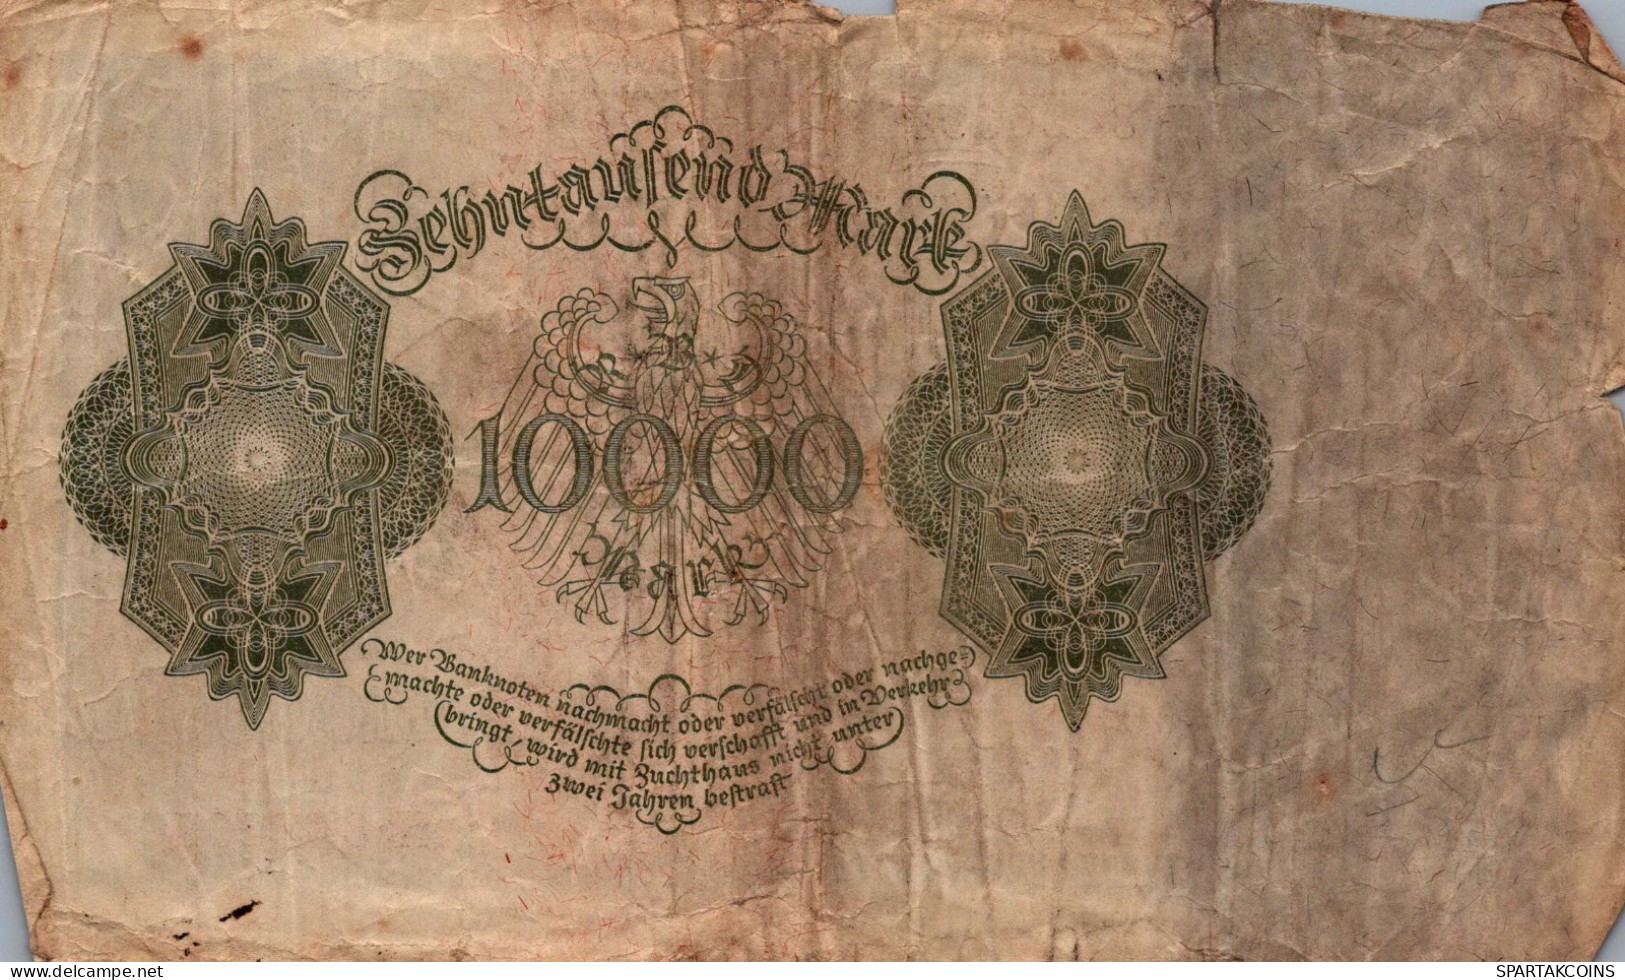 10000 MARK 1922 Stadt BERLIN DEUTSCHLAND Papiergeld Banknote #PL160 - [11] Emisiones Locales